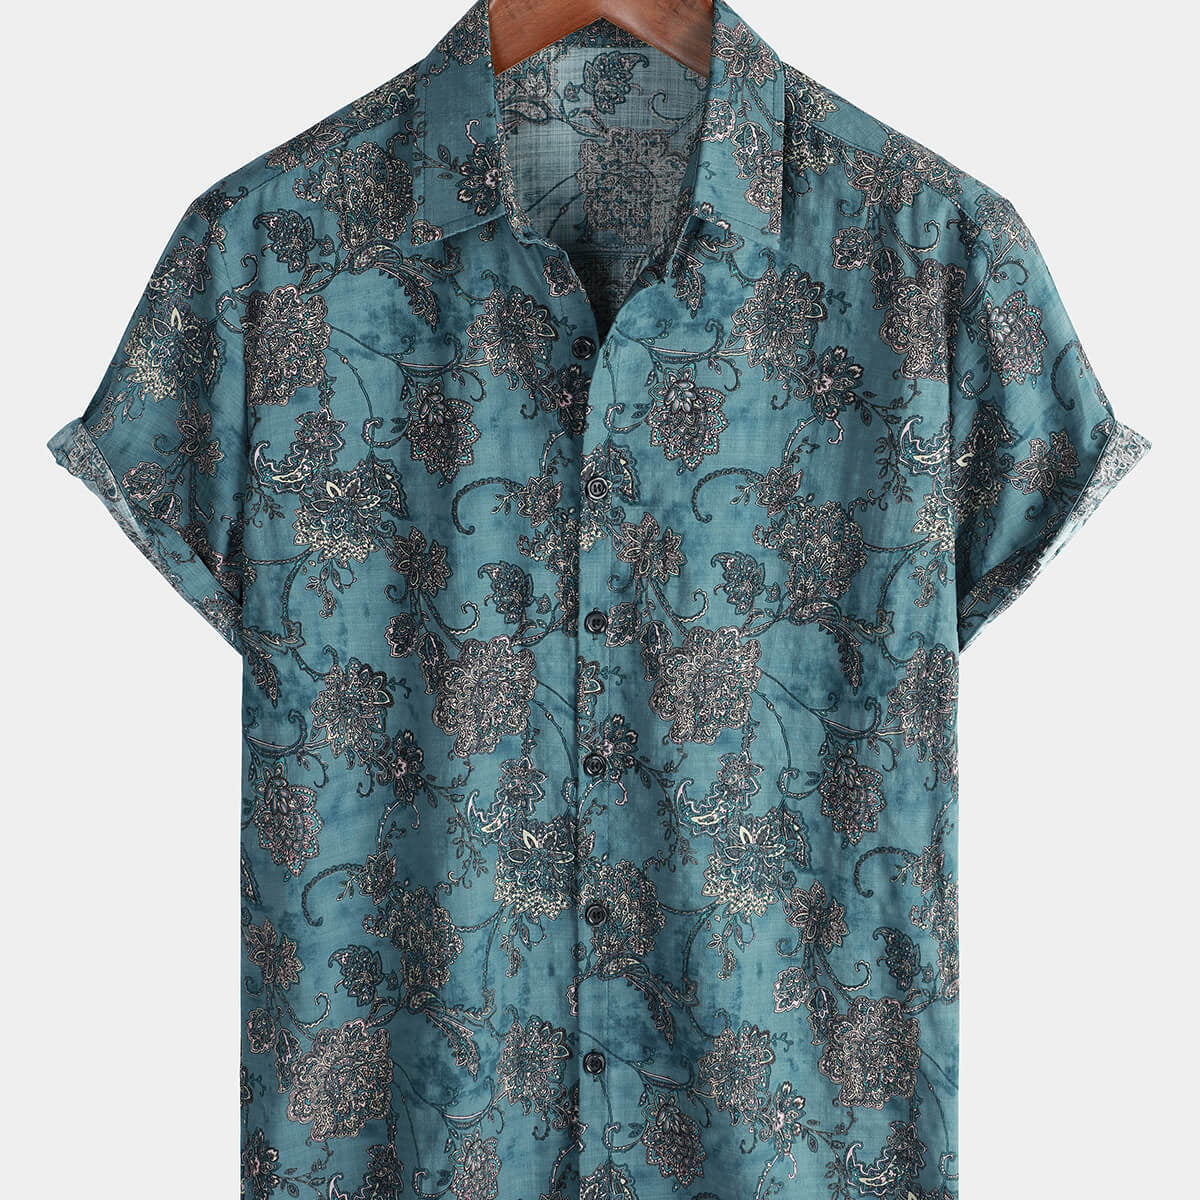 Men's Short Sleeve Vintage Paisley Floral Button Up Cotton Shirt